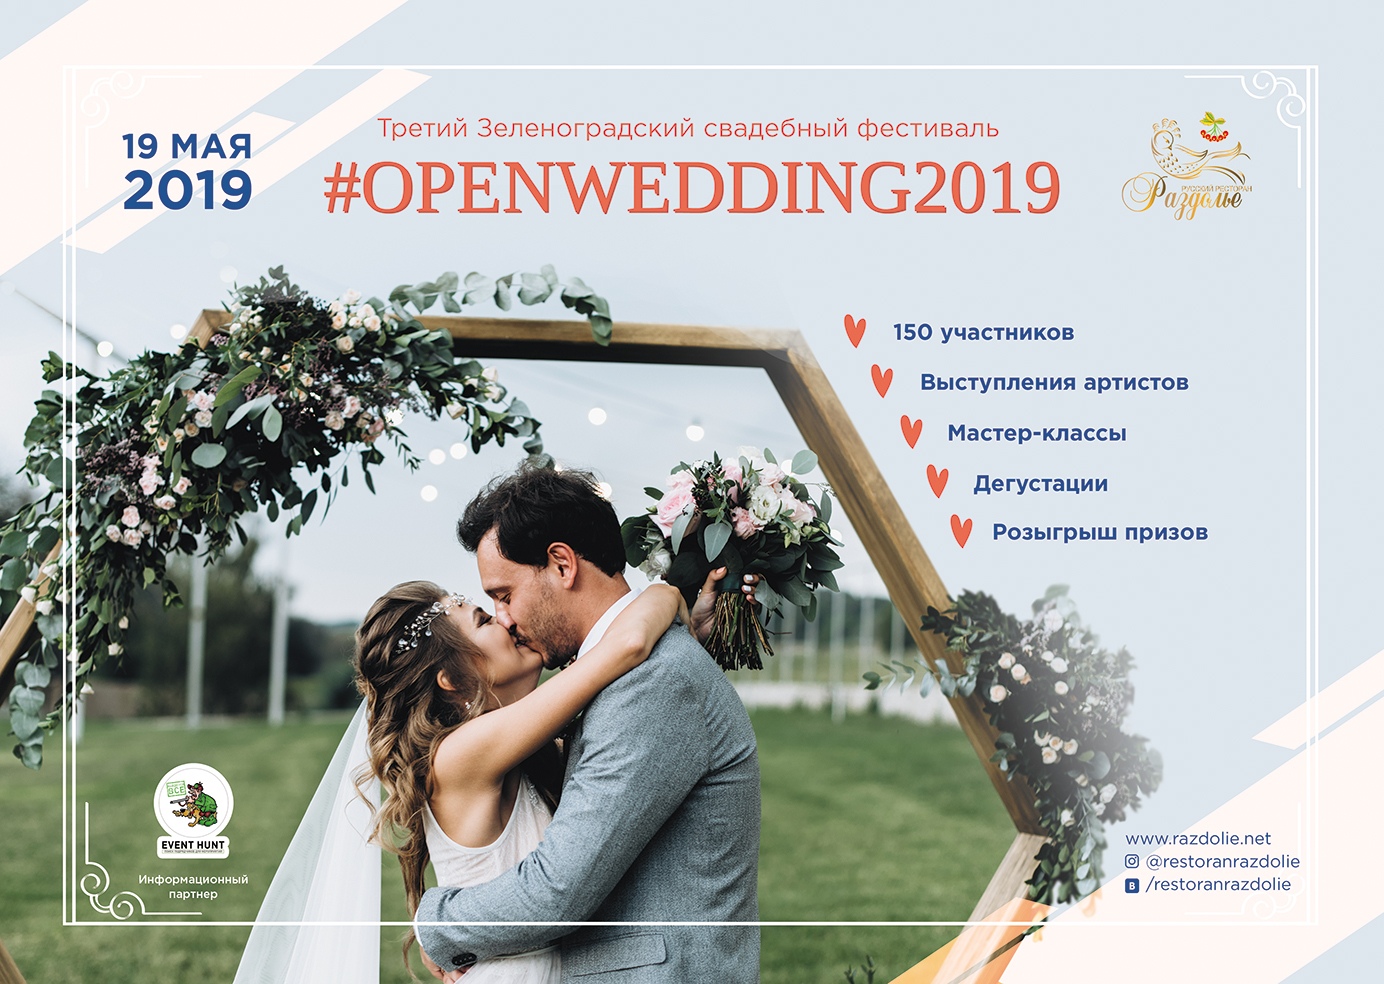 Третий Зеленоградский свадебный фестиваль - #OPENWEDDING2019